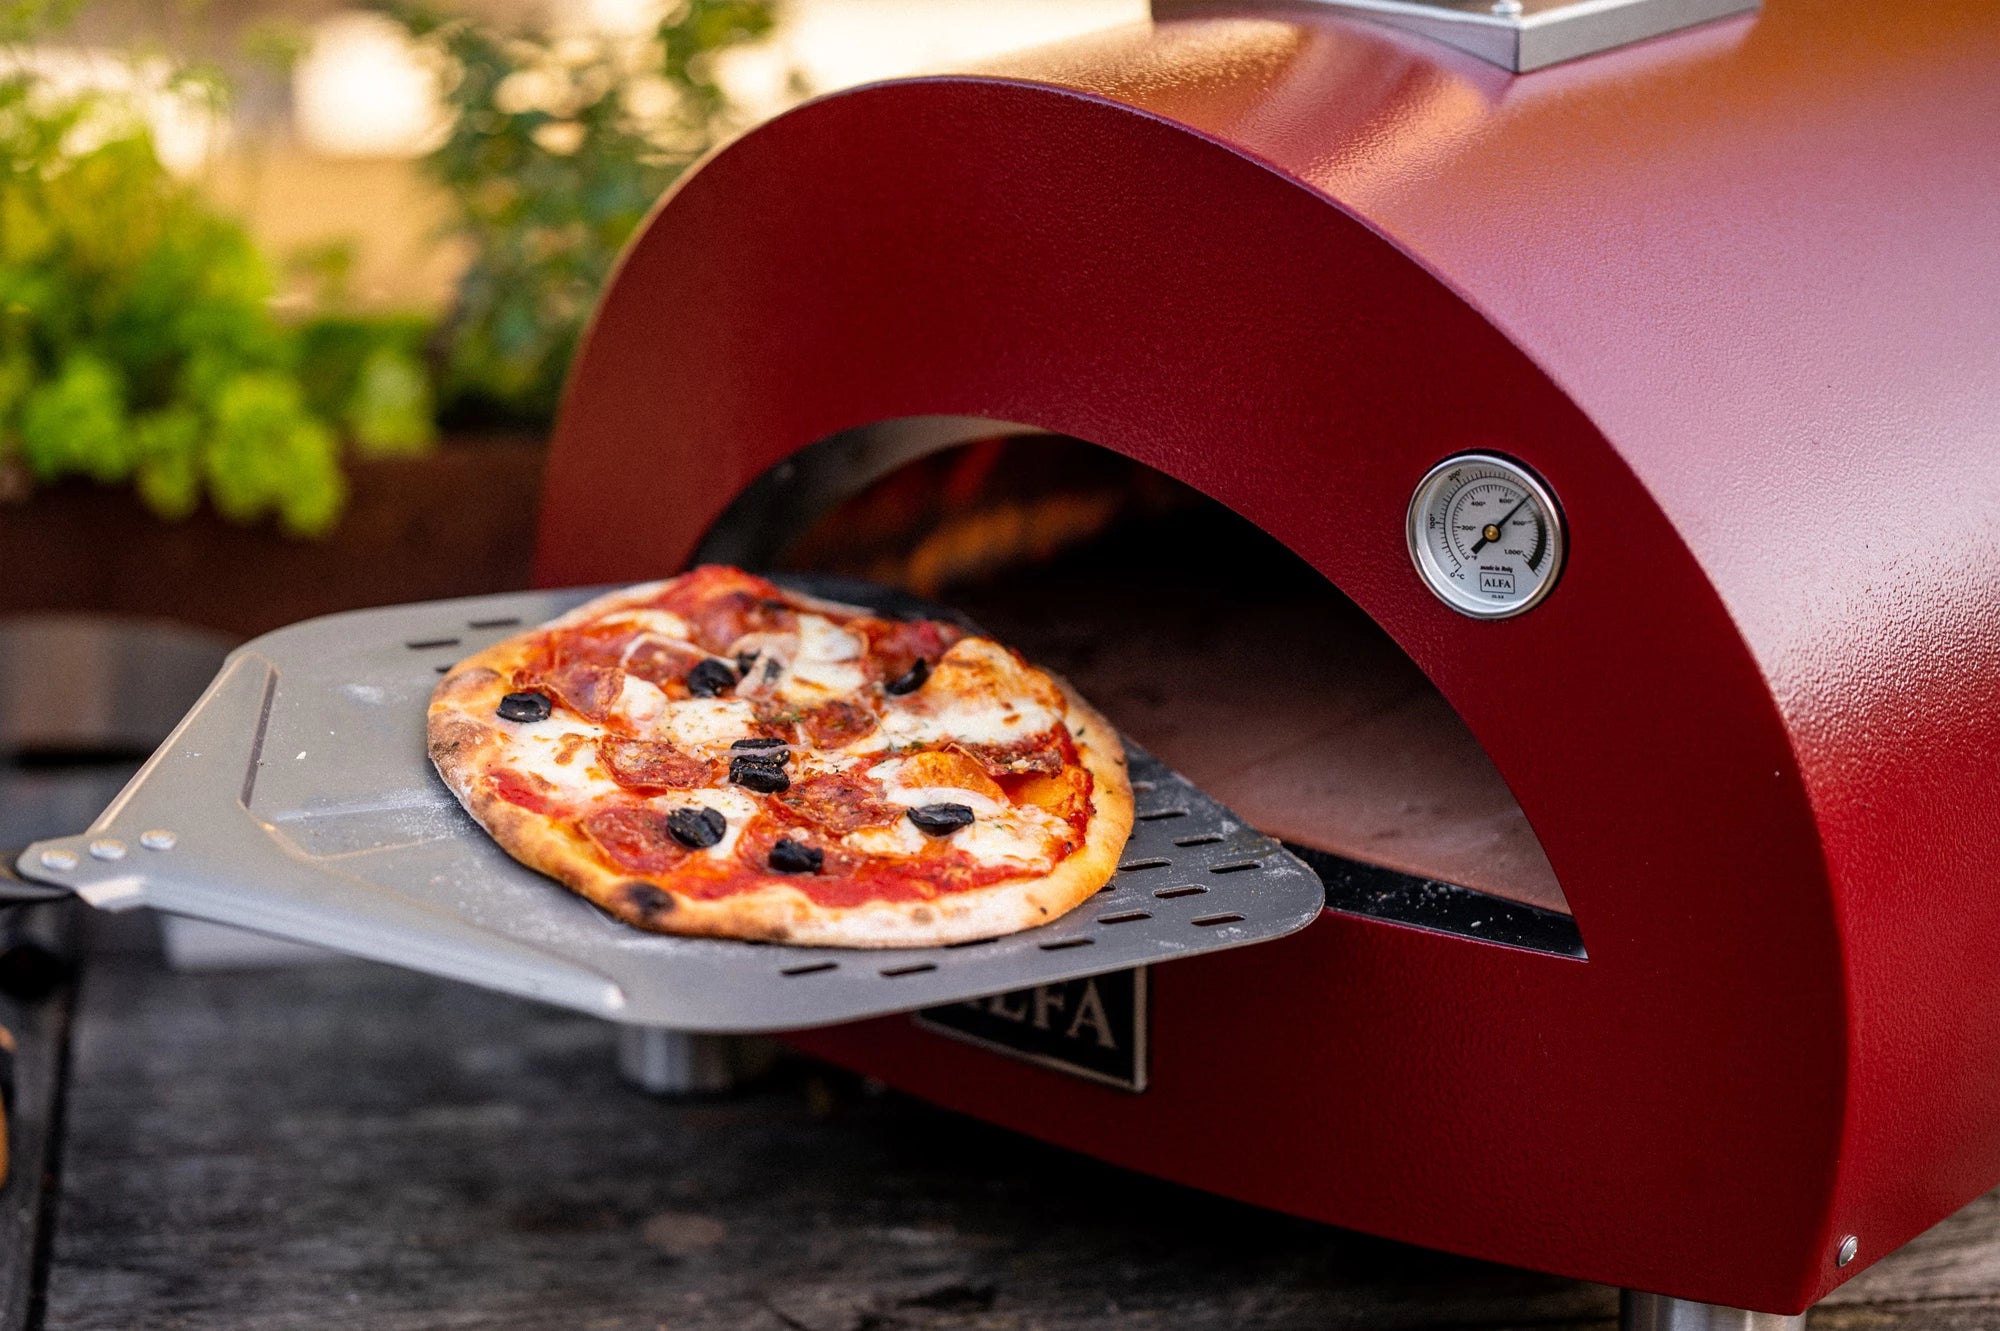 Alfa Pizza Oven Accessories